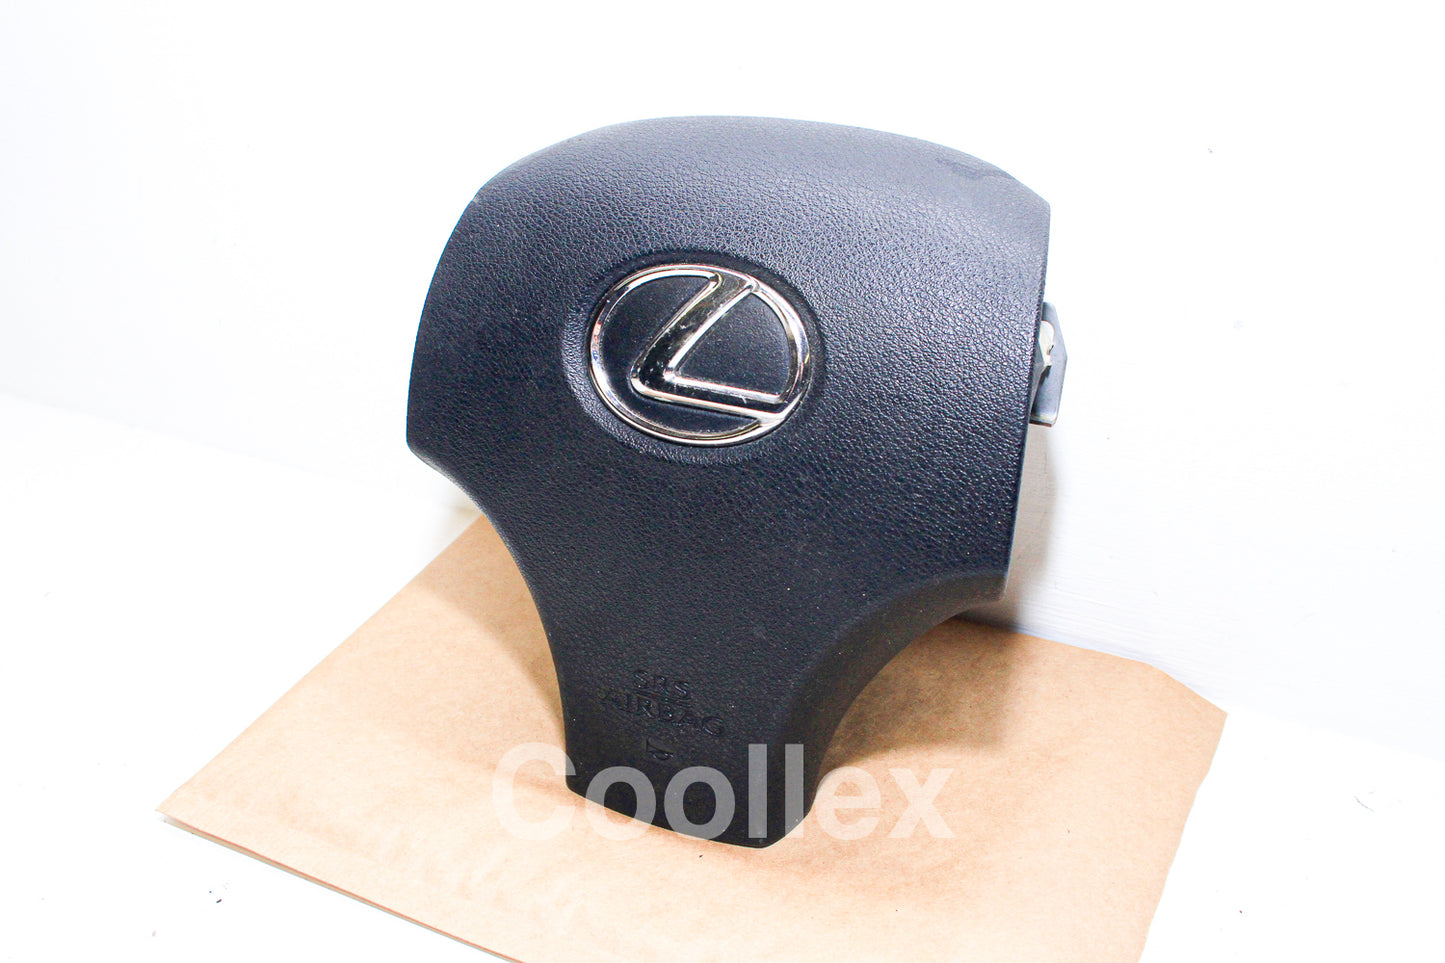 06-13 Lexus IS250 Awd Driver Steering Wheel Airbag Air Bag 45130-53080 Oem